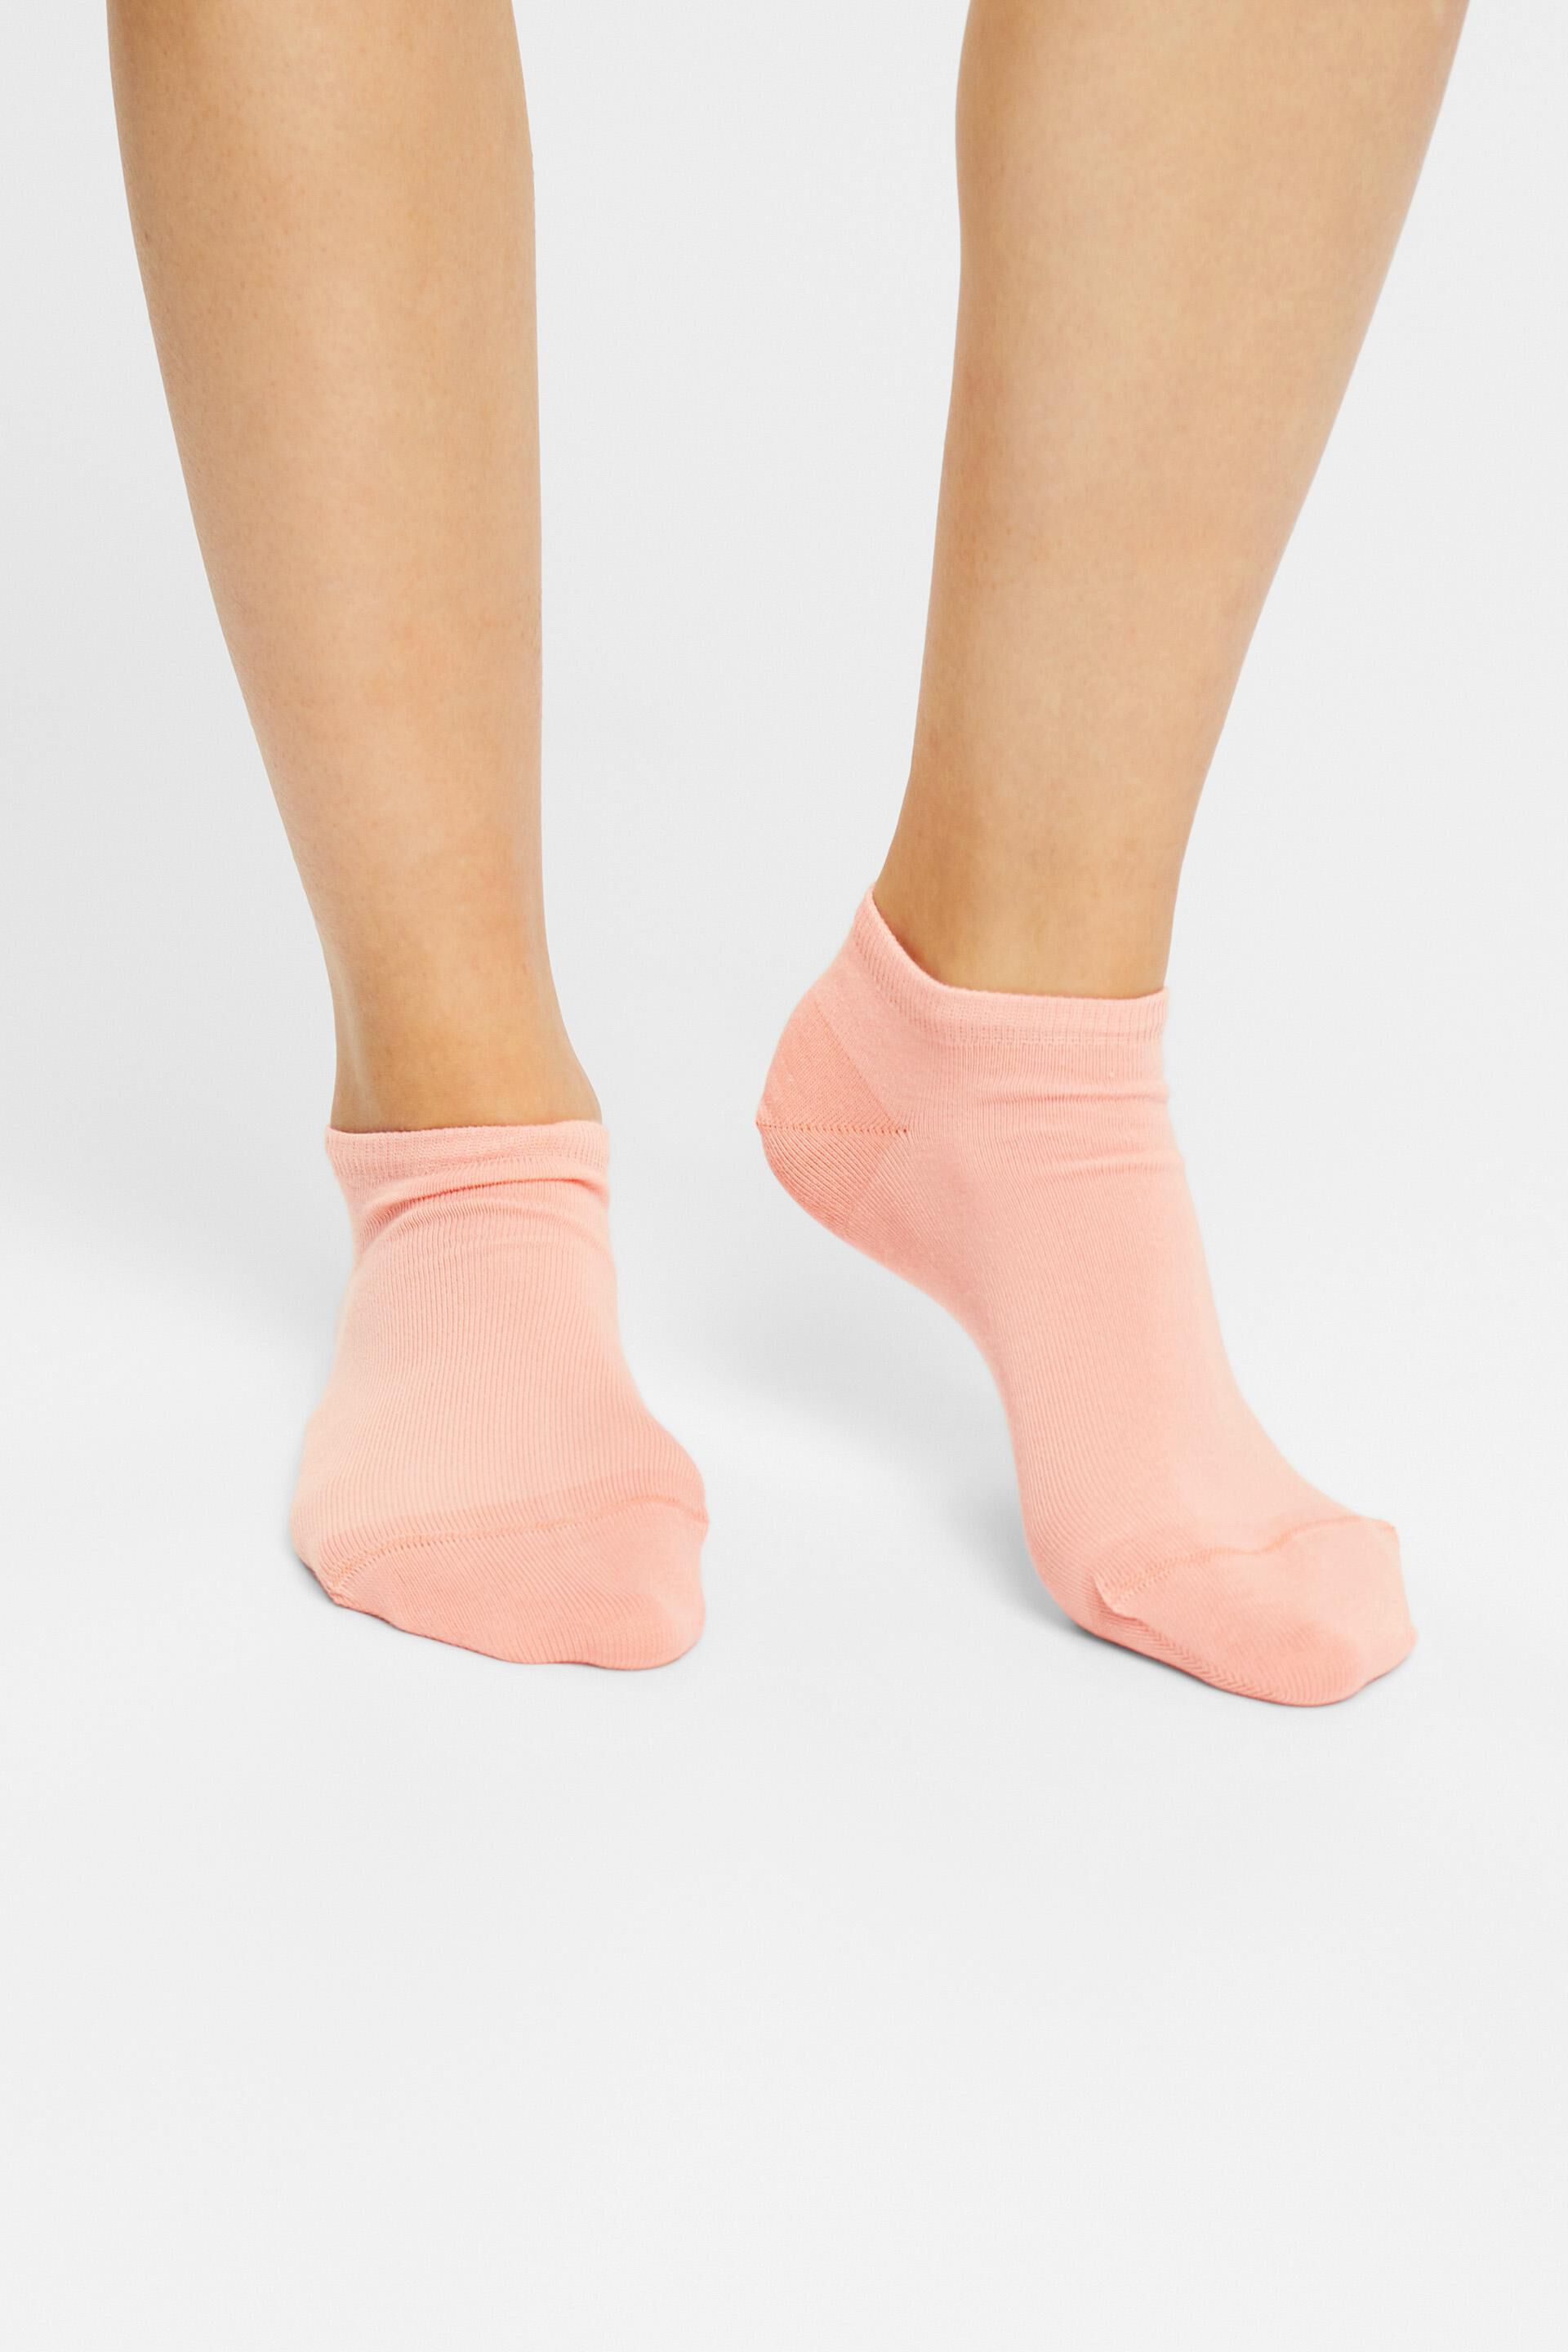 Esprit 2er-Pack Bio-Baumwolle aus Sneaker-Socken